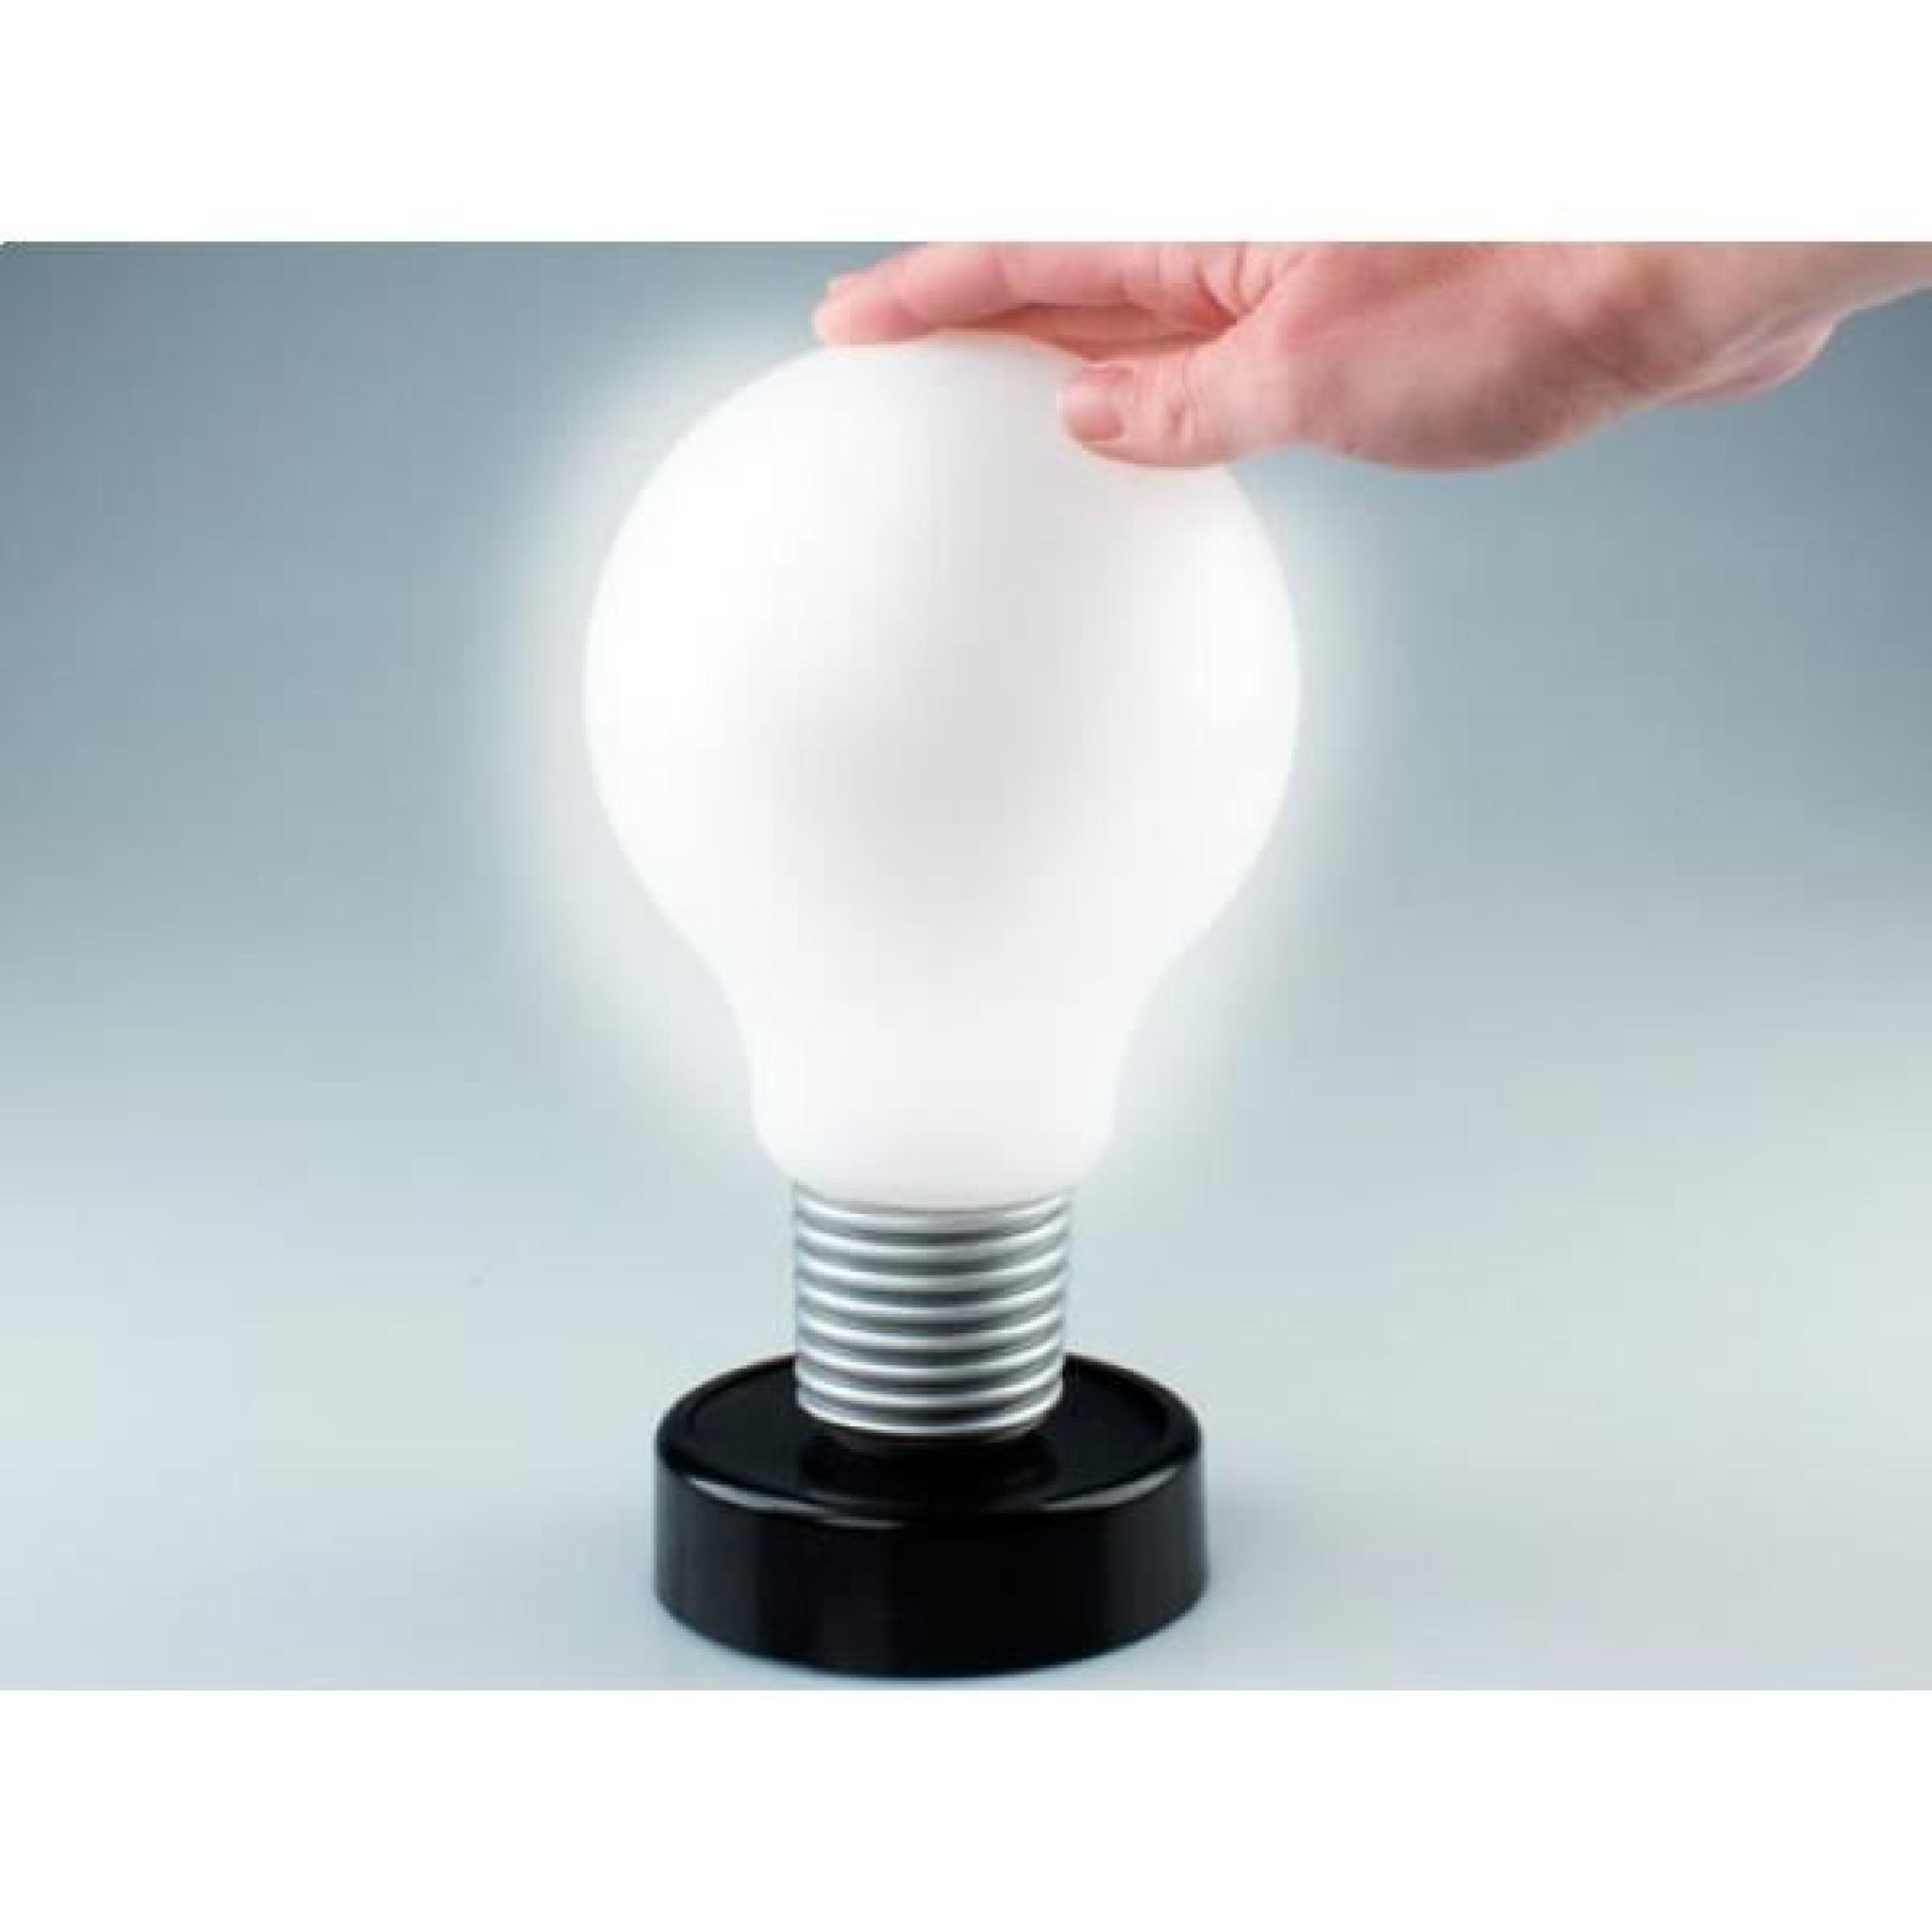 Jolie lampe LED ampoule tactile lumineux lumiere deco LED